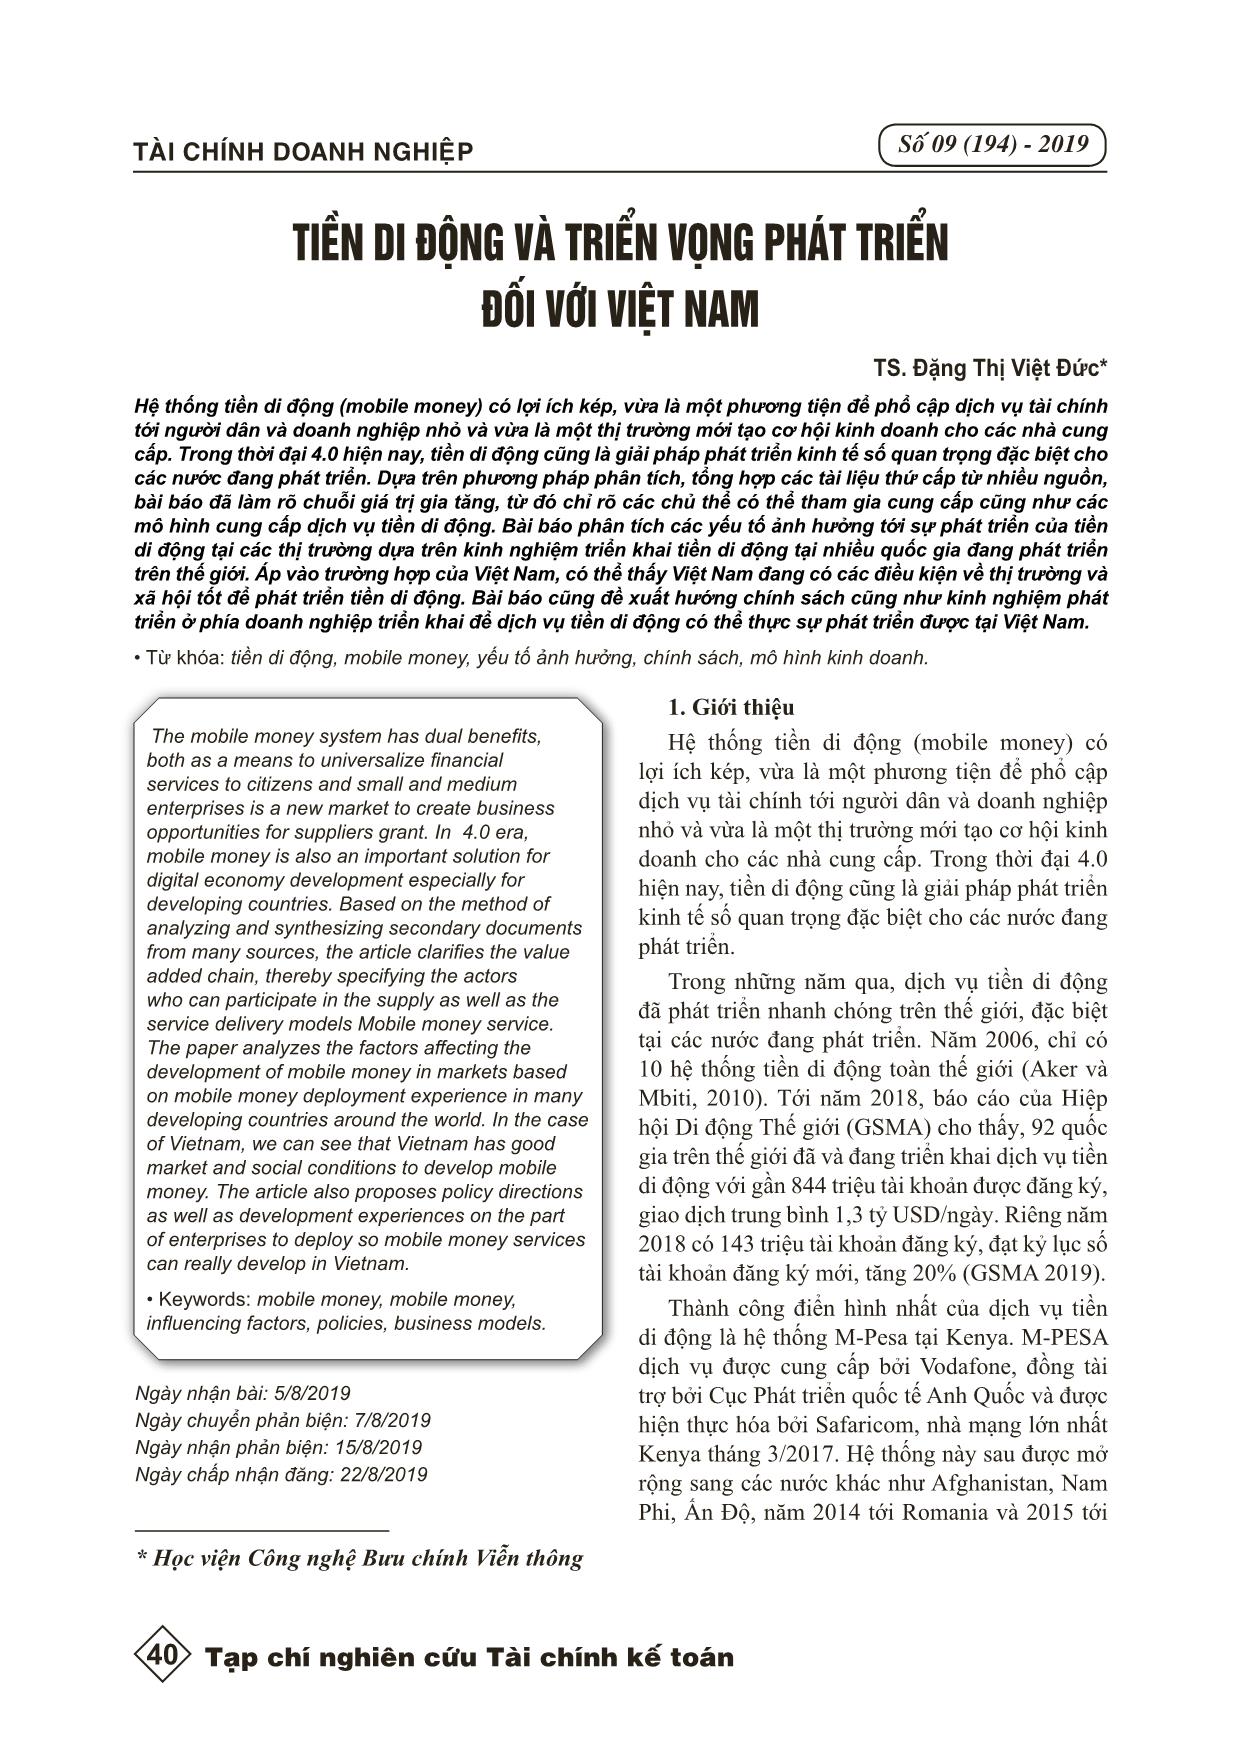 Tiền di động và triển vọng phát triển đối với Việt Nam trang 1